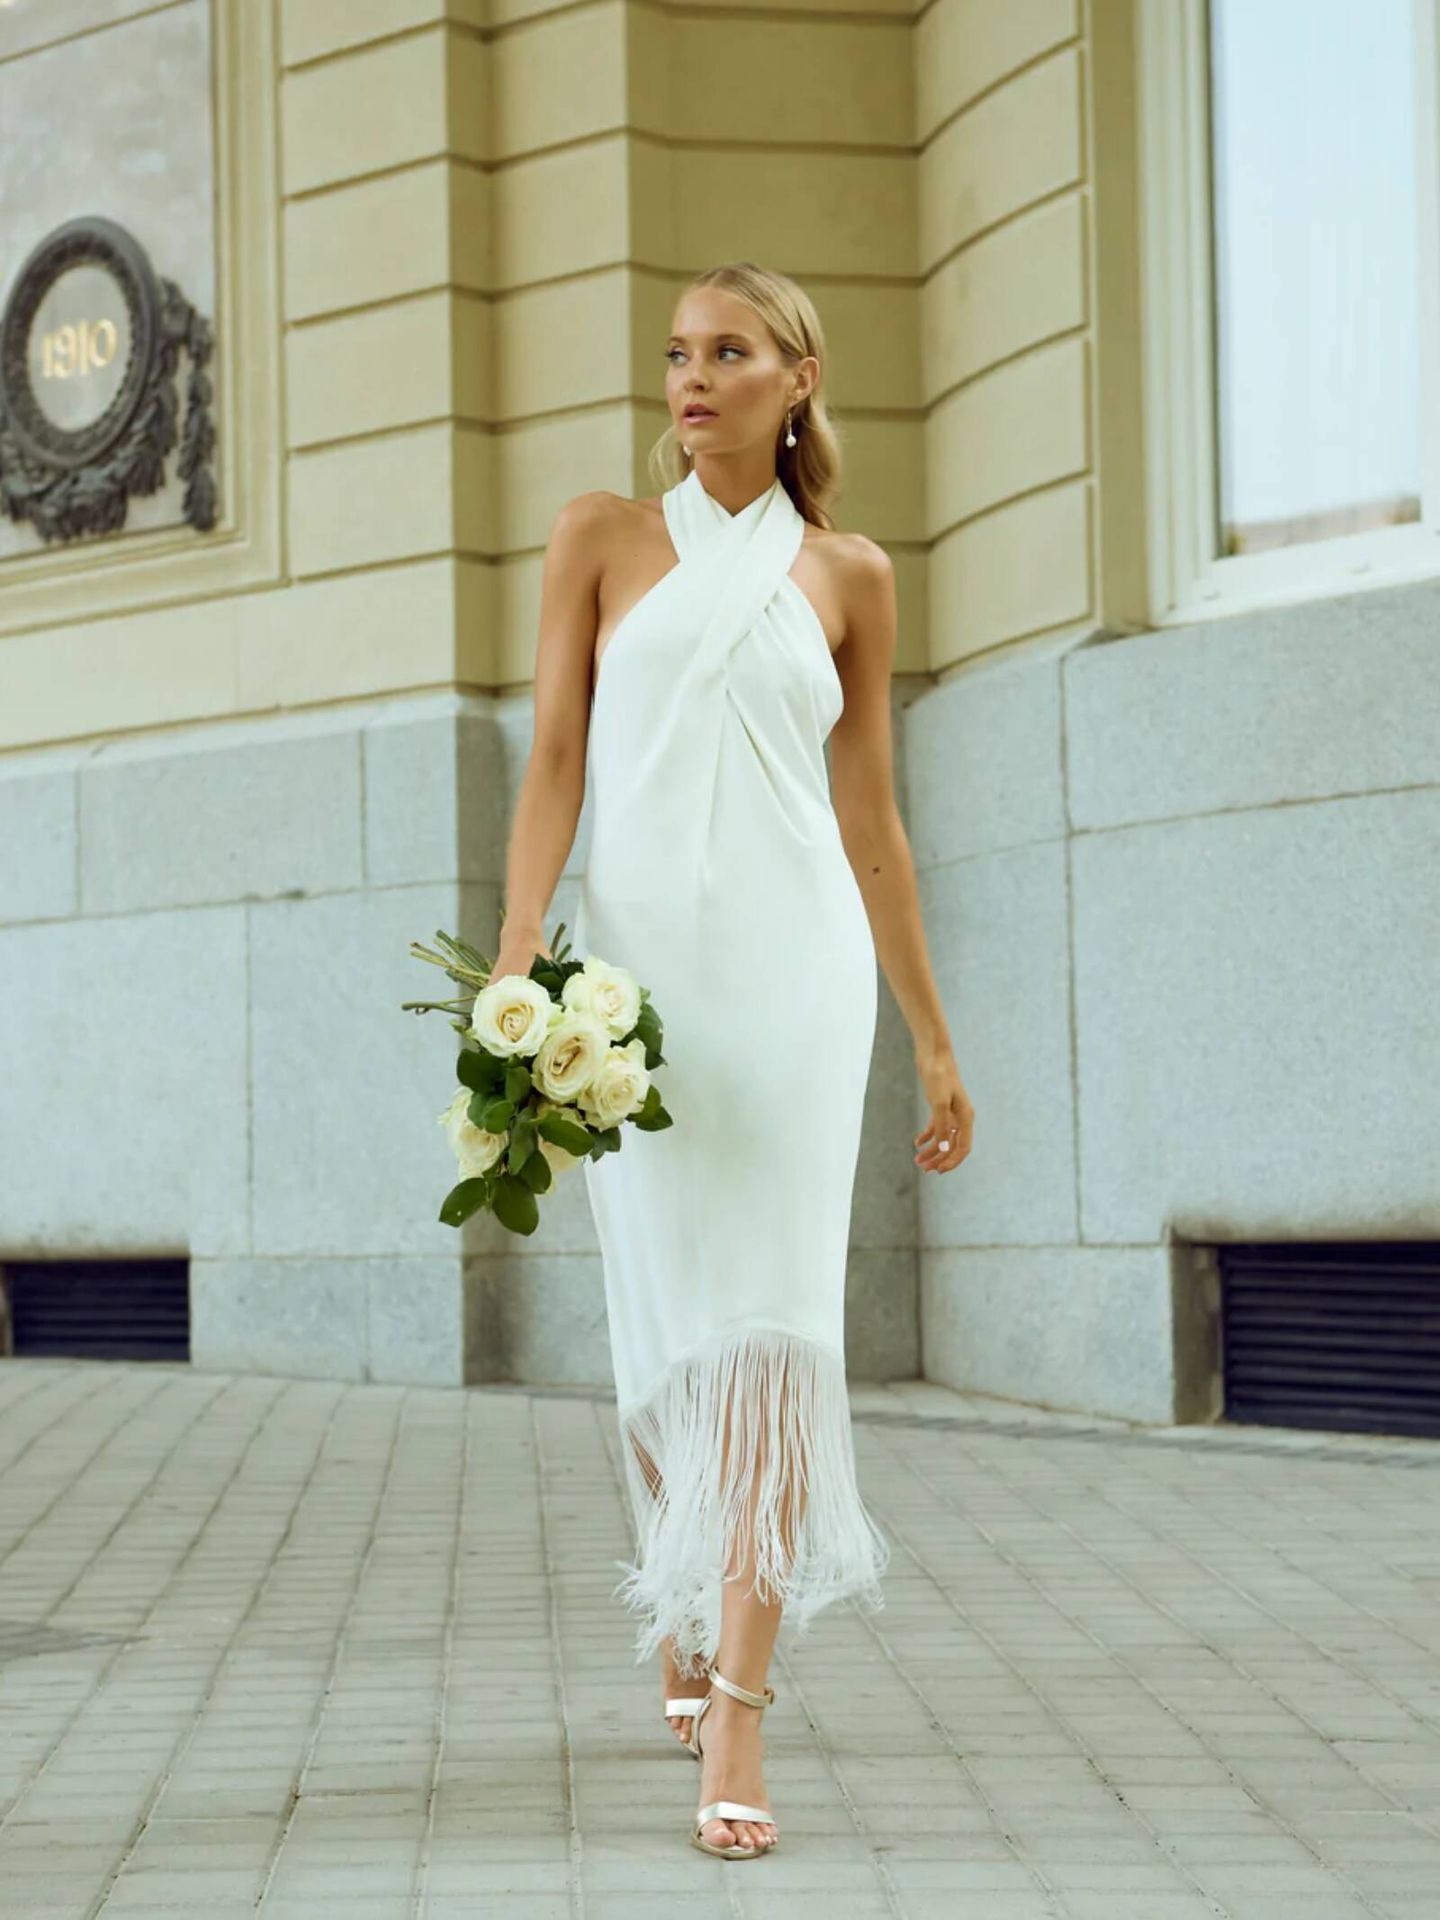 contar Ir a caminar Cada semana Vestidos de novia baratos: 12 looks nupciales por menos de 350 euros